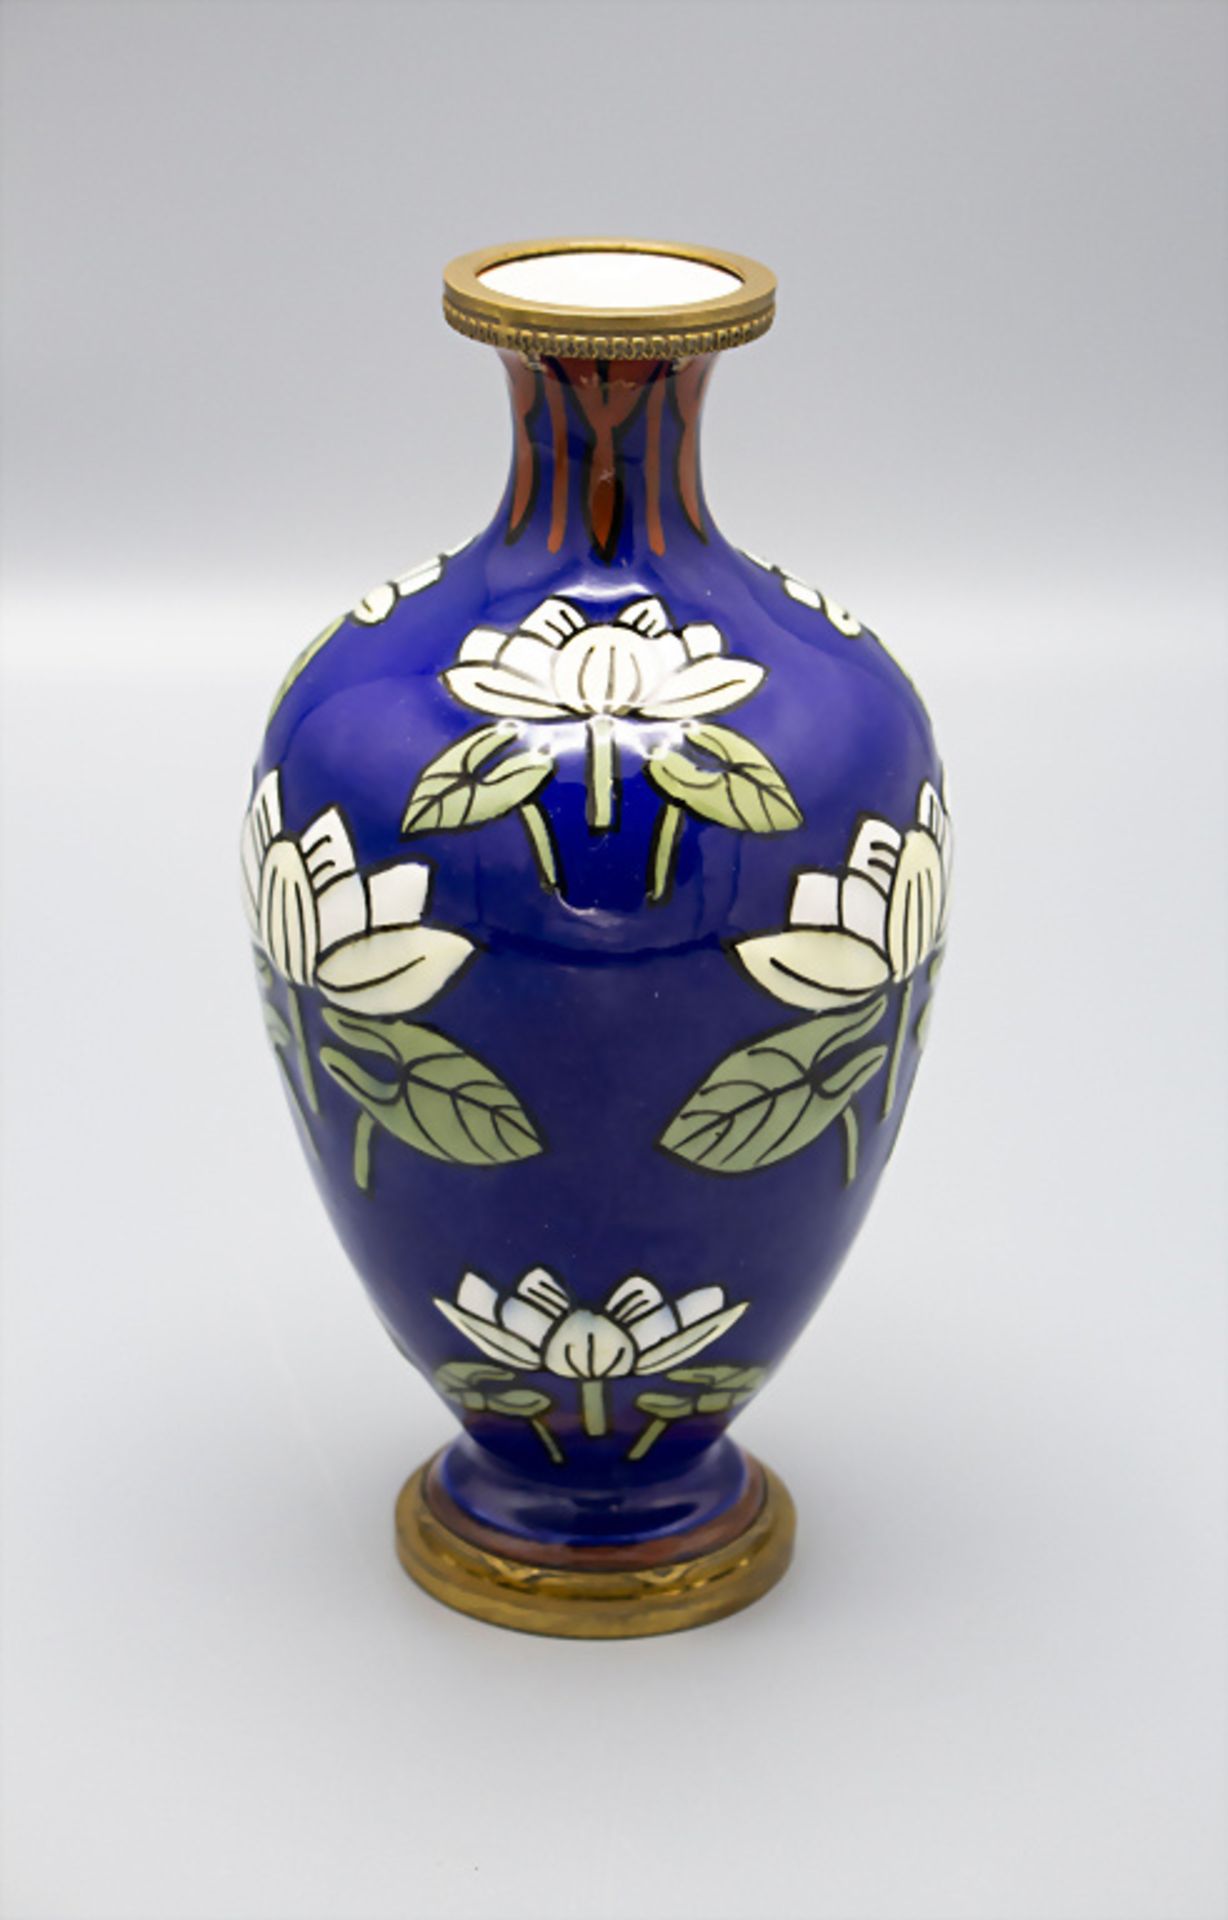 Jugendstil Vase mit Seerosen und Bronzemontur / An Art Nouveau faience vase with water lilies ...